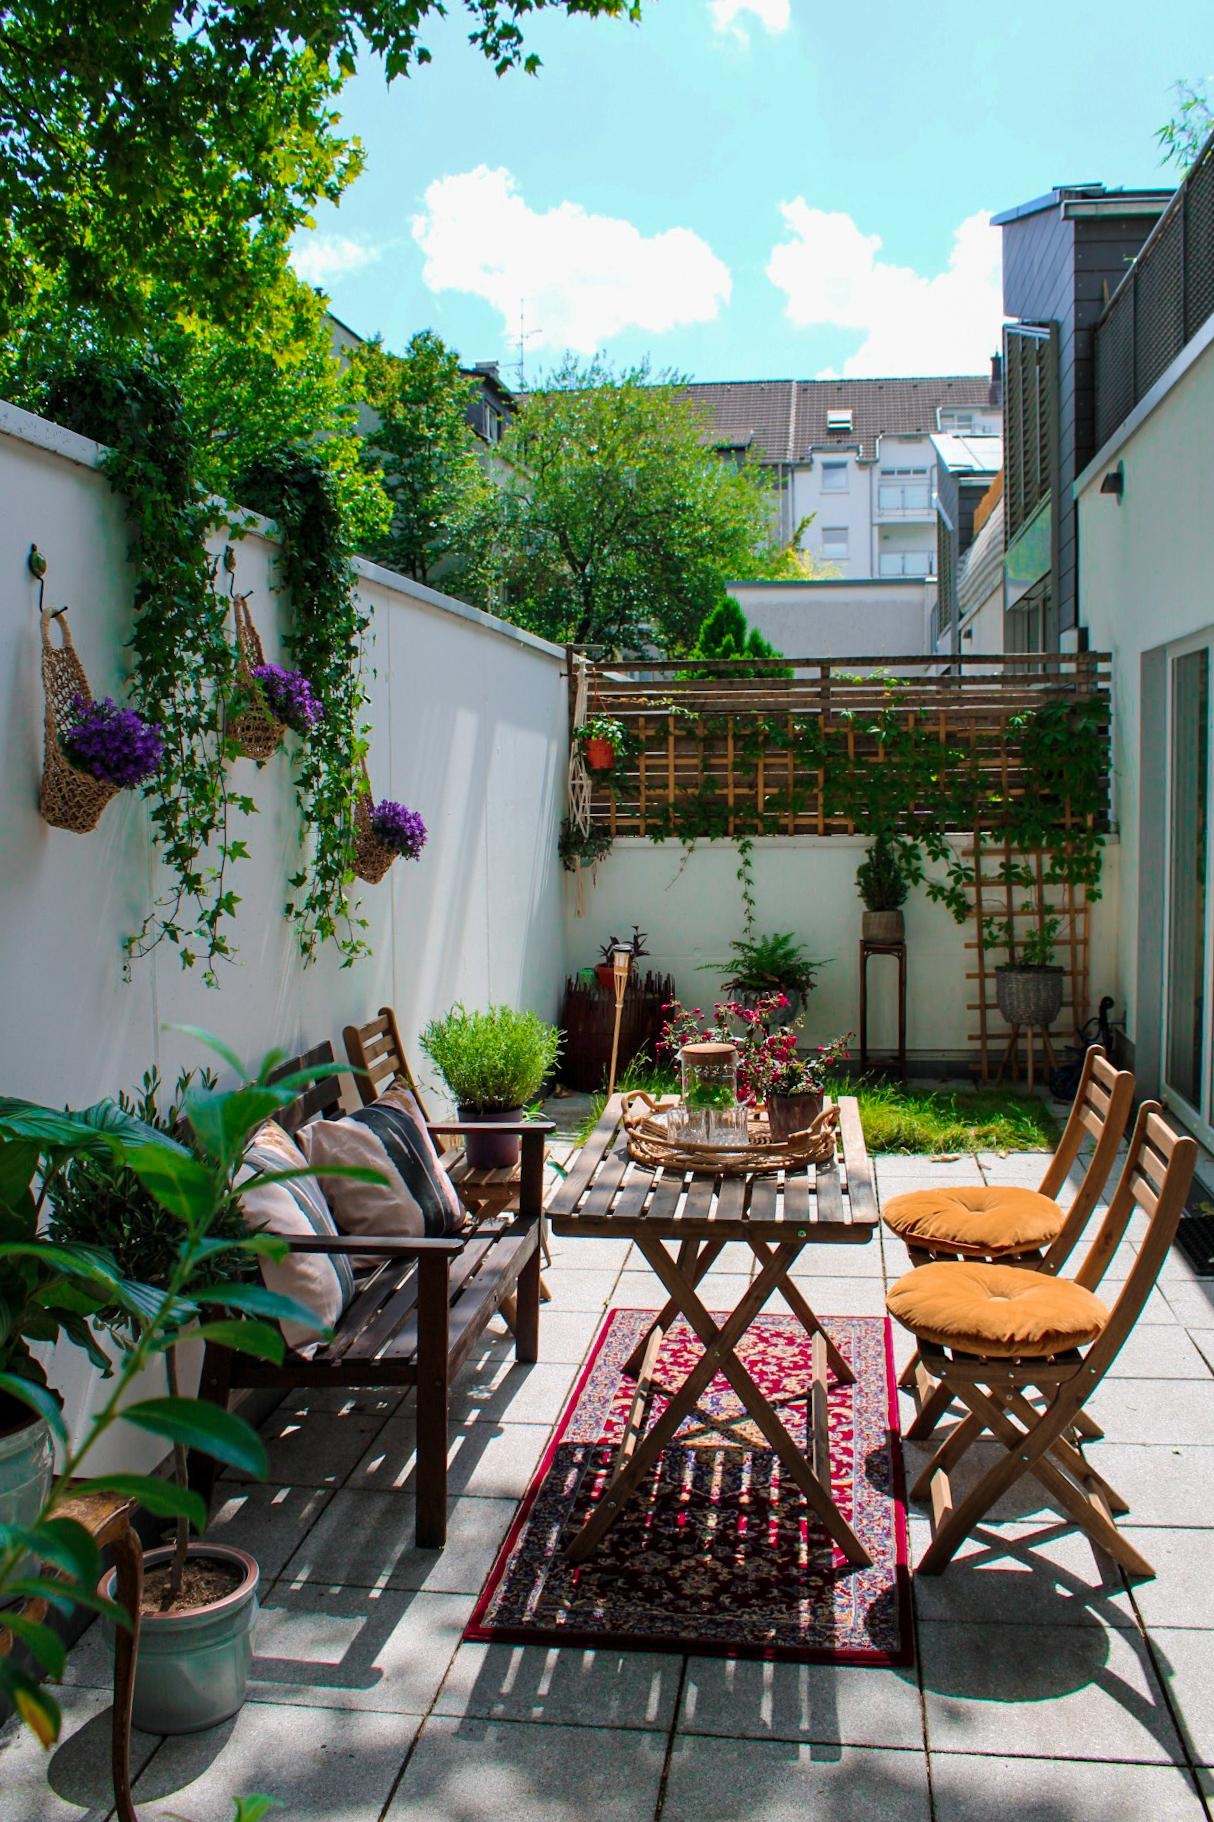 #outdoorliving
#draussenzimmer
#balkonideen
#terrassengestaltung 
#outdoorteppich
#hofgarten
#atriumgarten